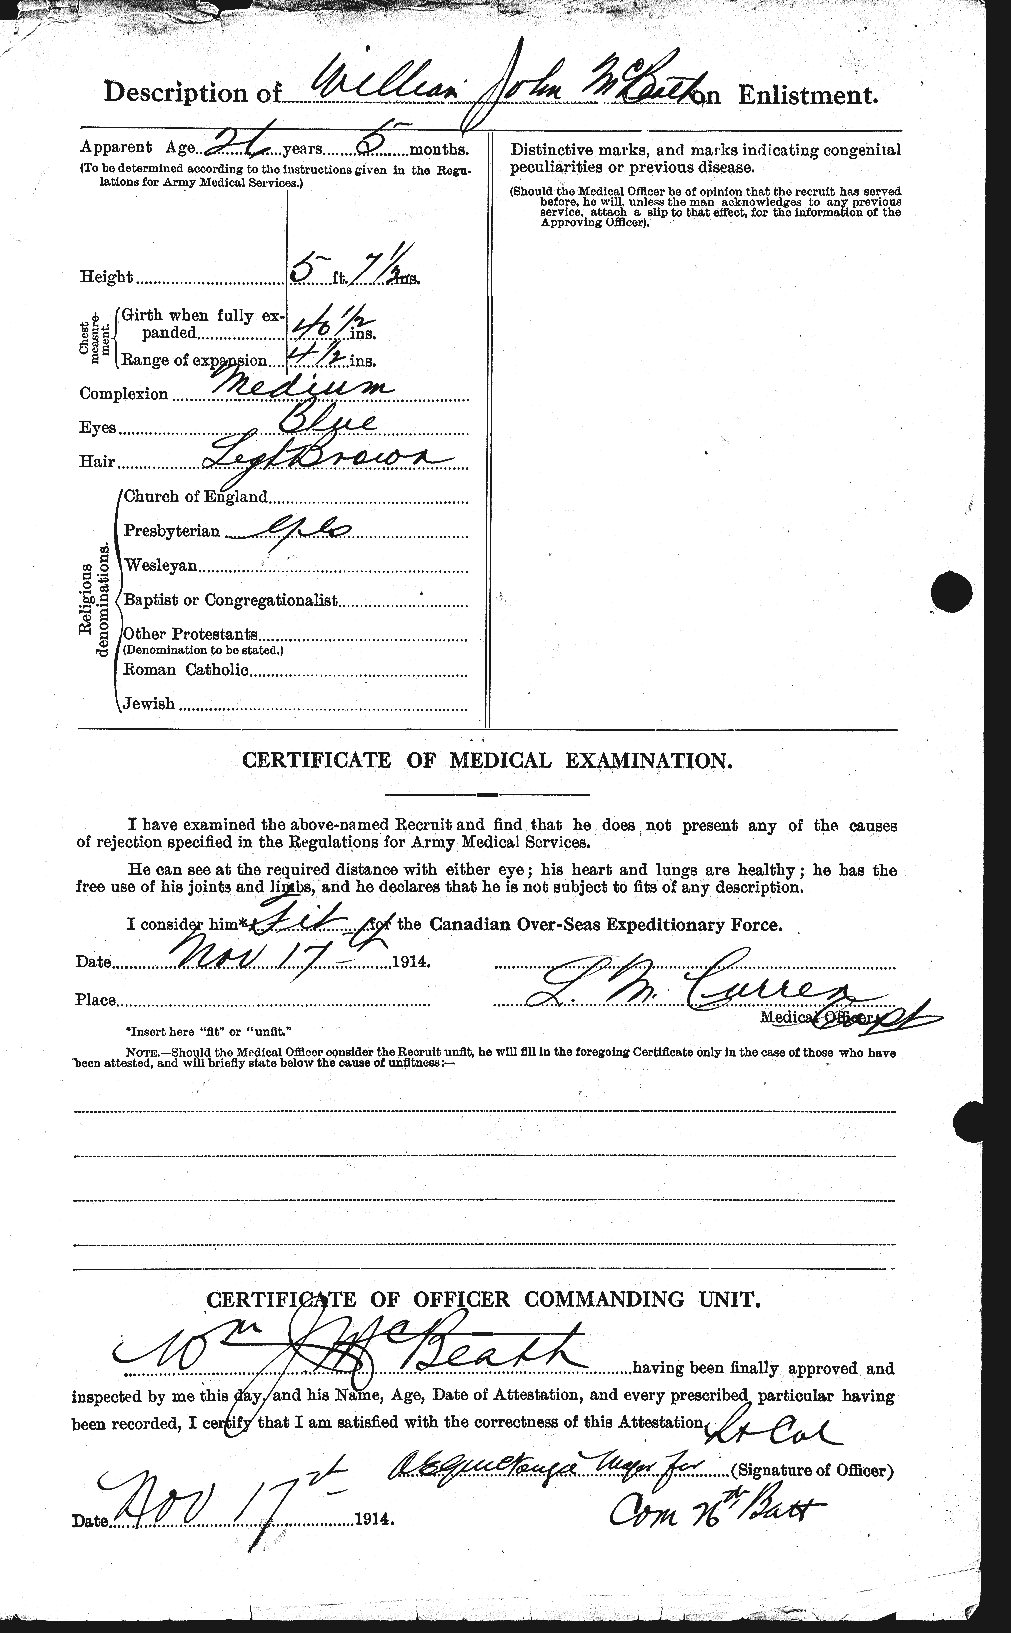 Dossiers du Personnel de la Première Guerre mondiale - CEC 132368b